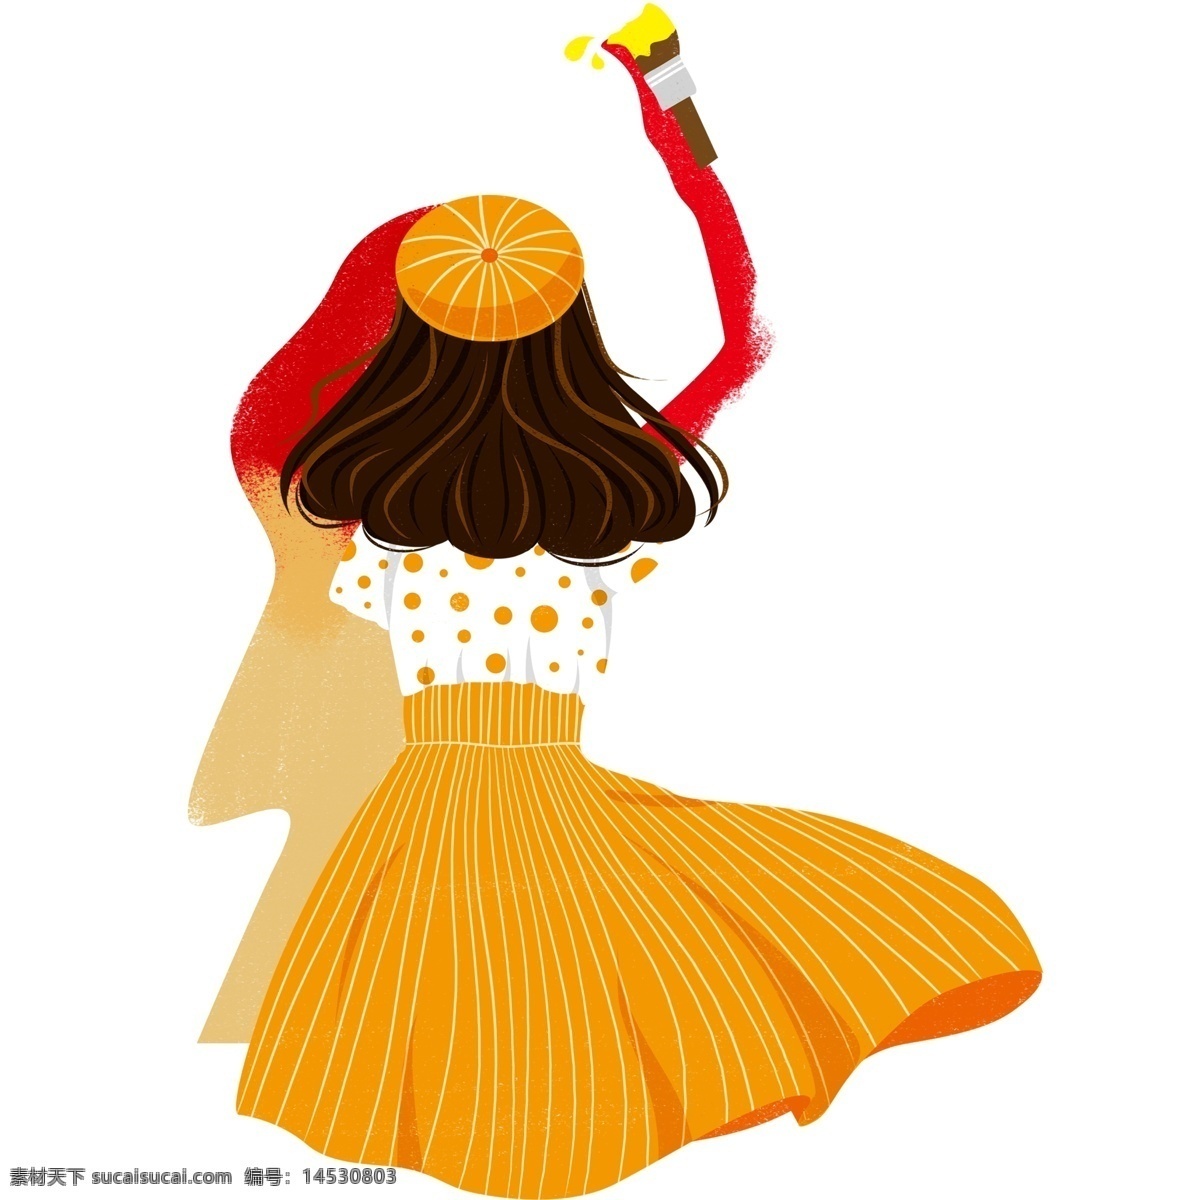 斑点 裙 绘画 少女 装饰 元素 帽子 可爱 装饰元素 长裙 刷子 手绘 黄色裙子 斑点裙